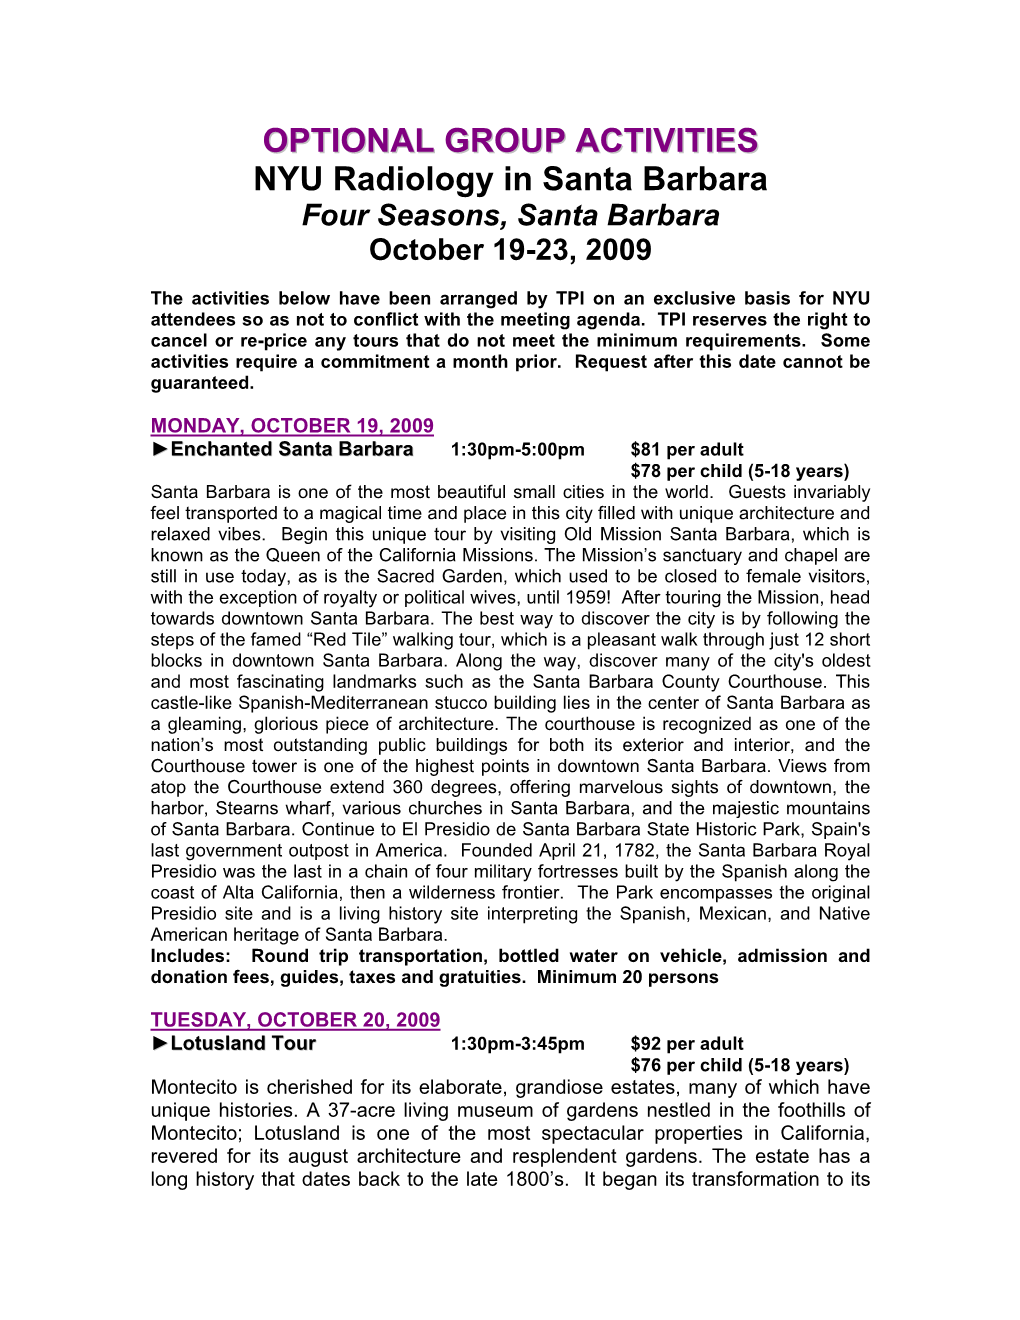 OPTIONAL GROUP ACTIVITIES NYU Radiology in Santa Barbara Four Seasons, Santa Barbara October 19-23, 2009